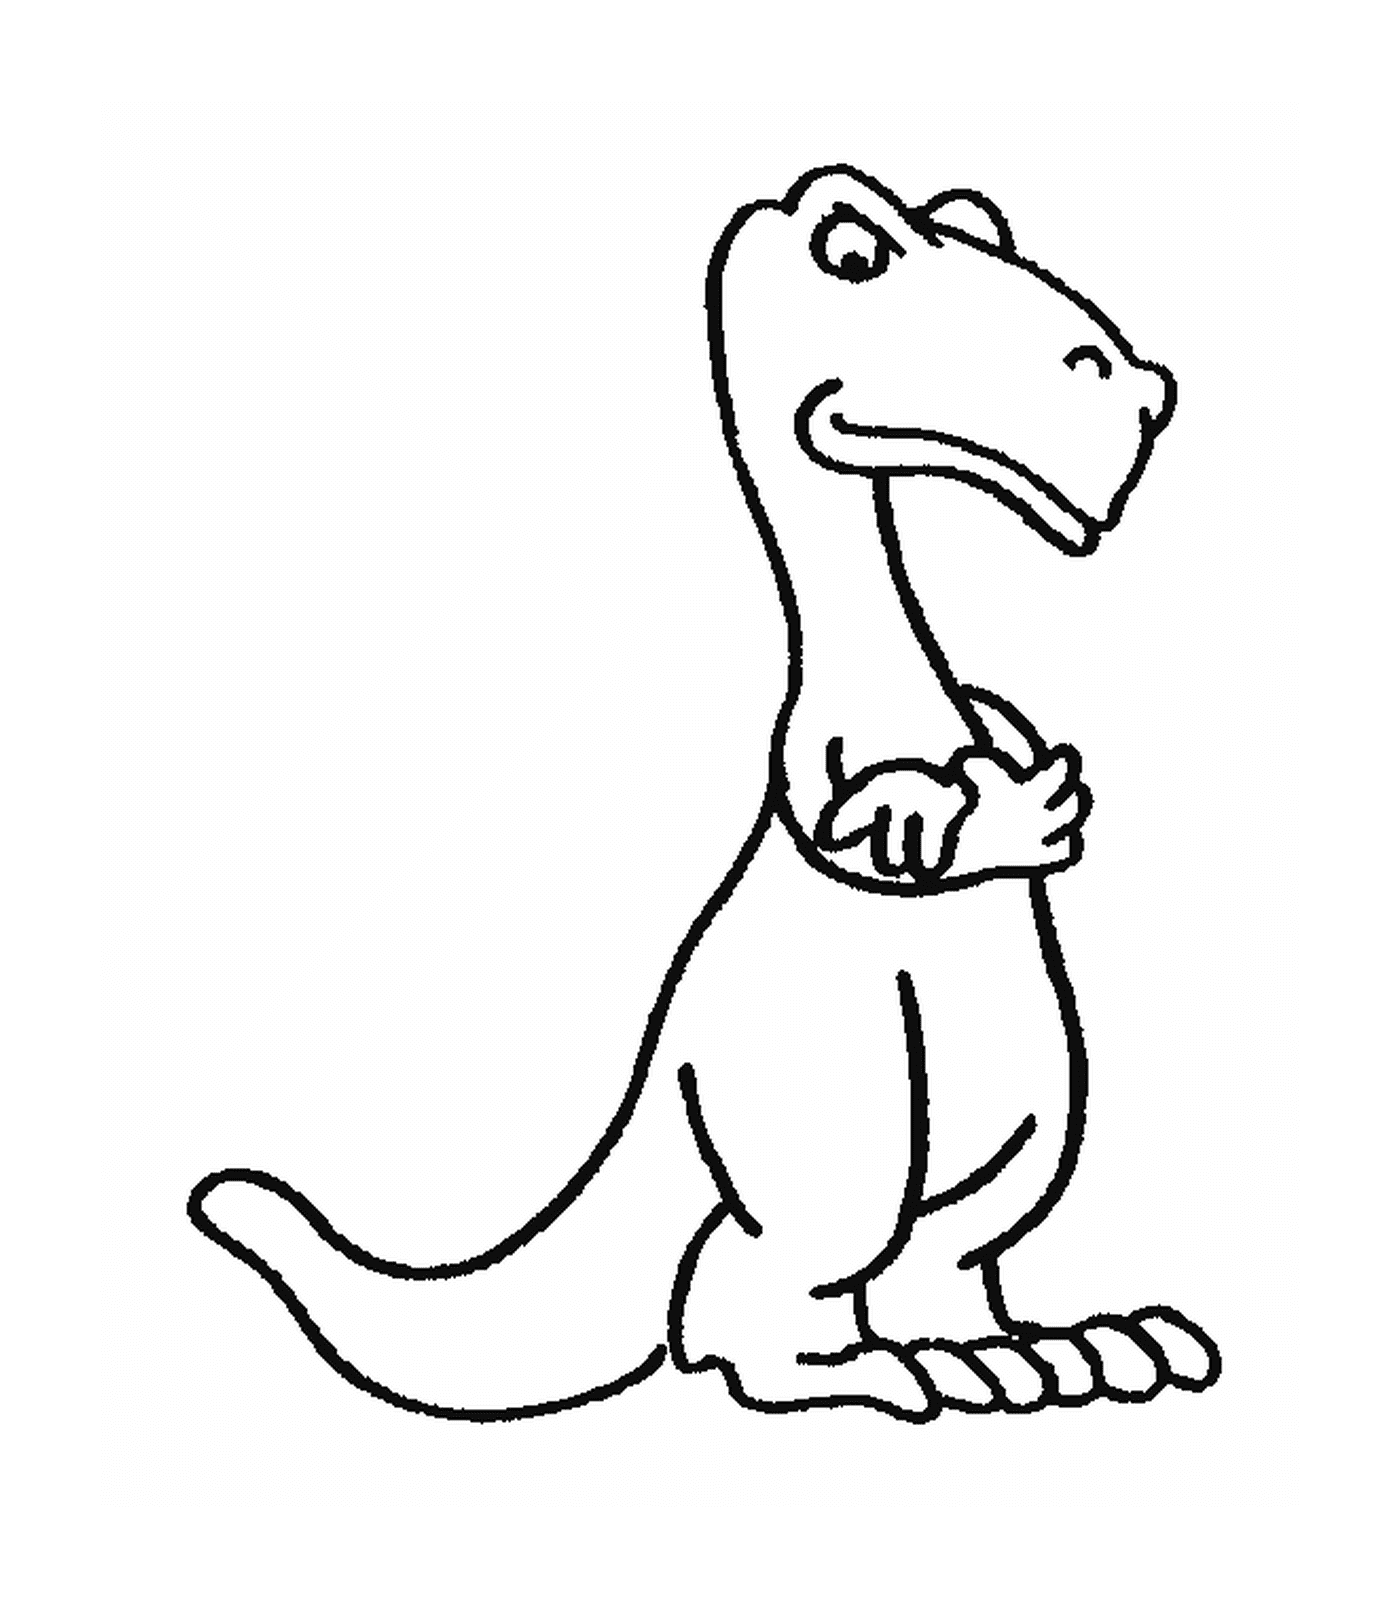  Dinossauro com um olhar imponente 